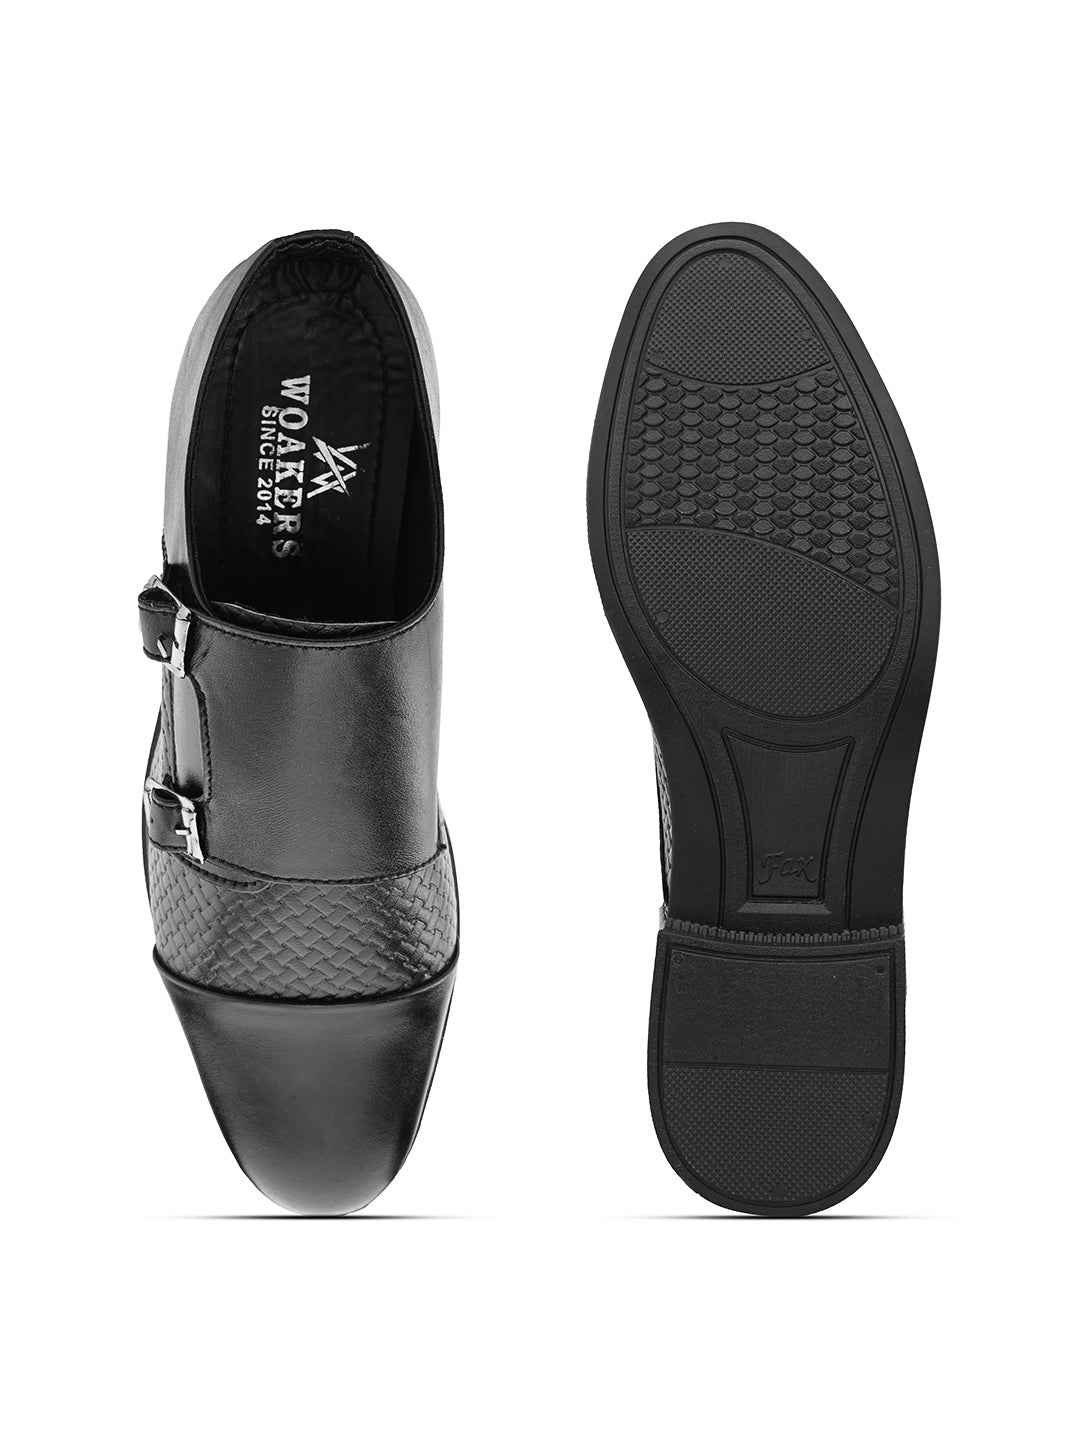 Woakers Mens Comfort Shoes  HR-MUKESAN-BLK